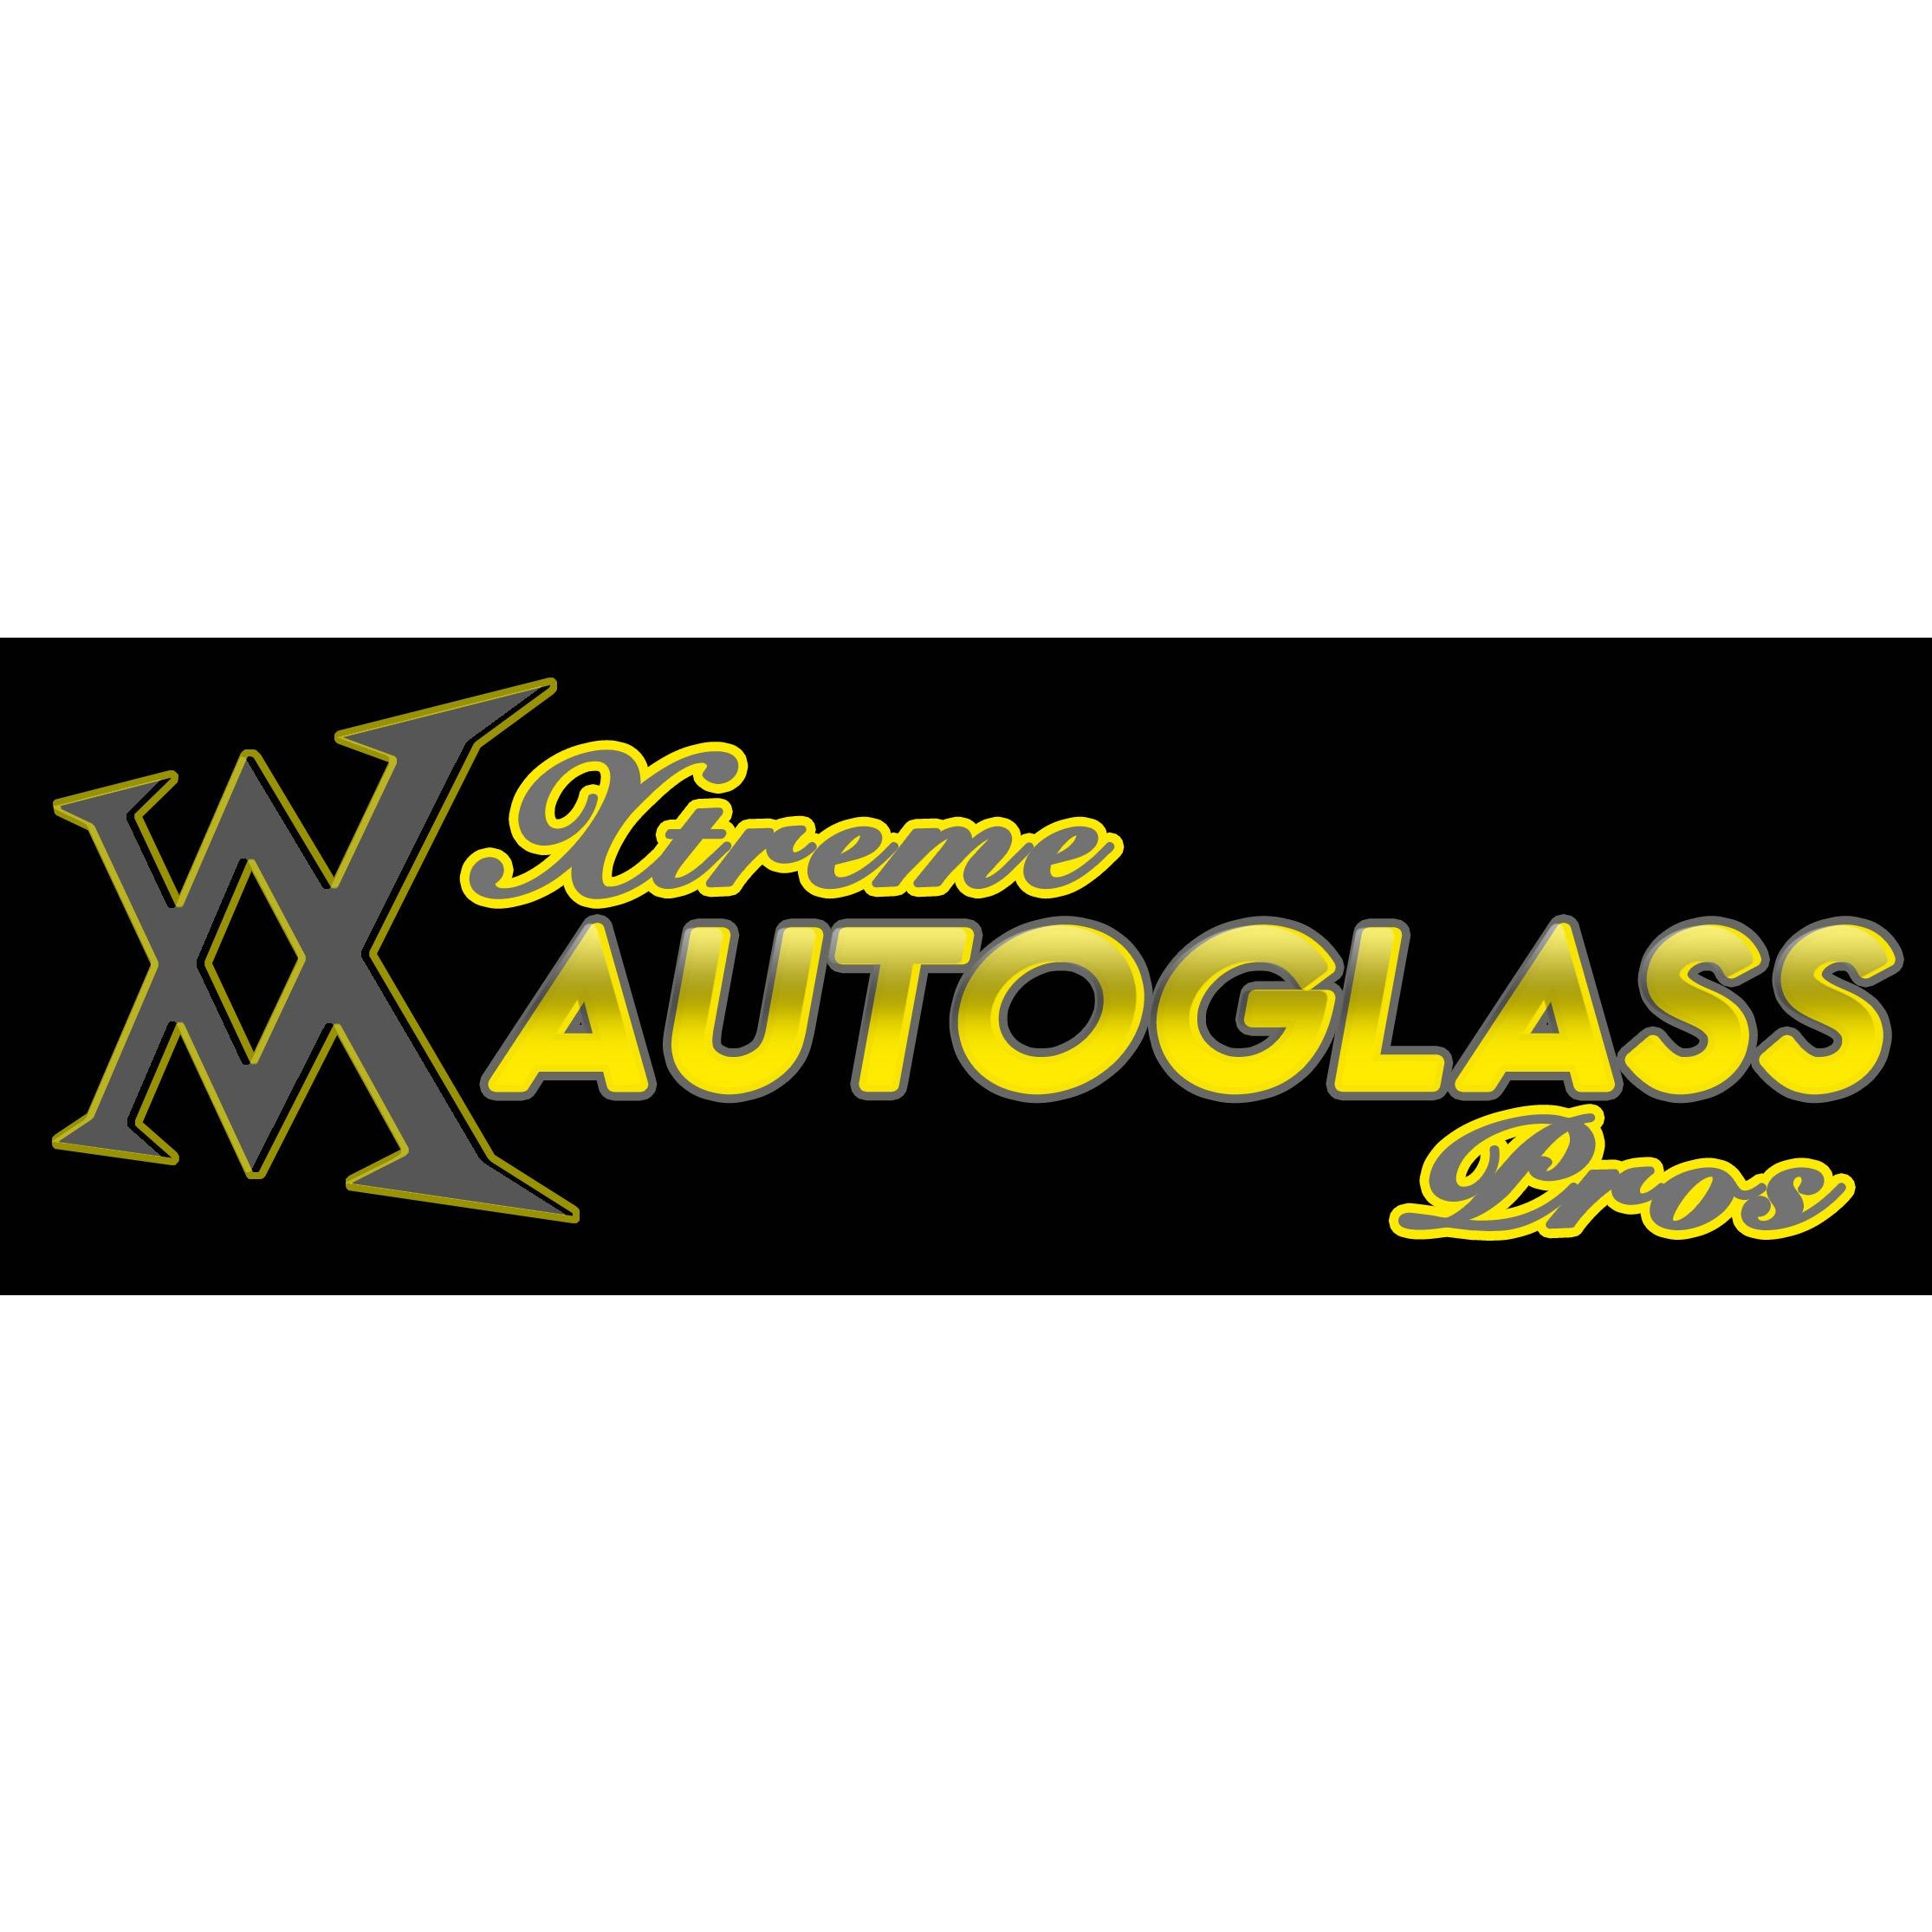 Xtreme Autoglass Pros, LLC